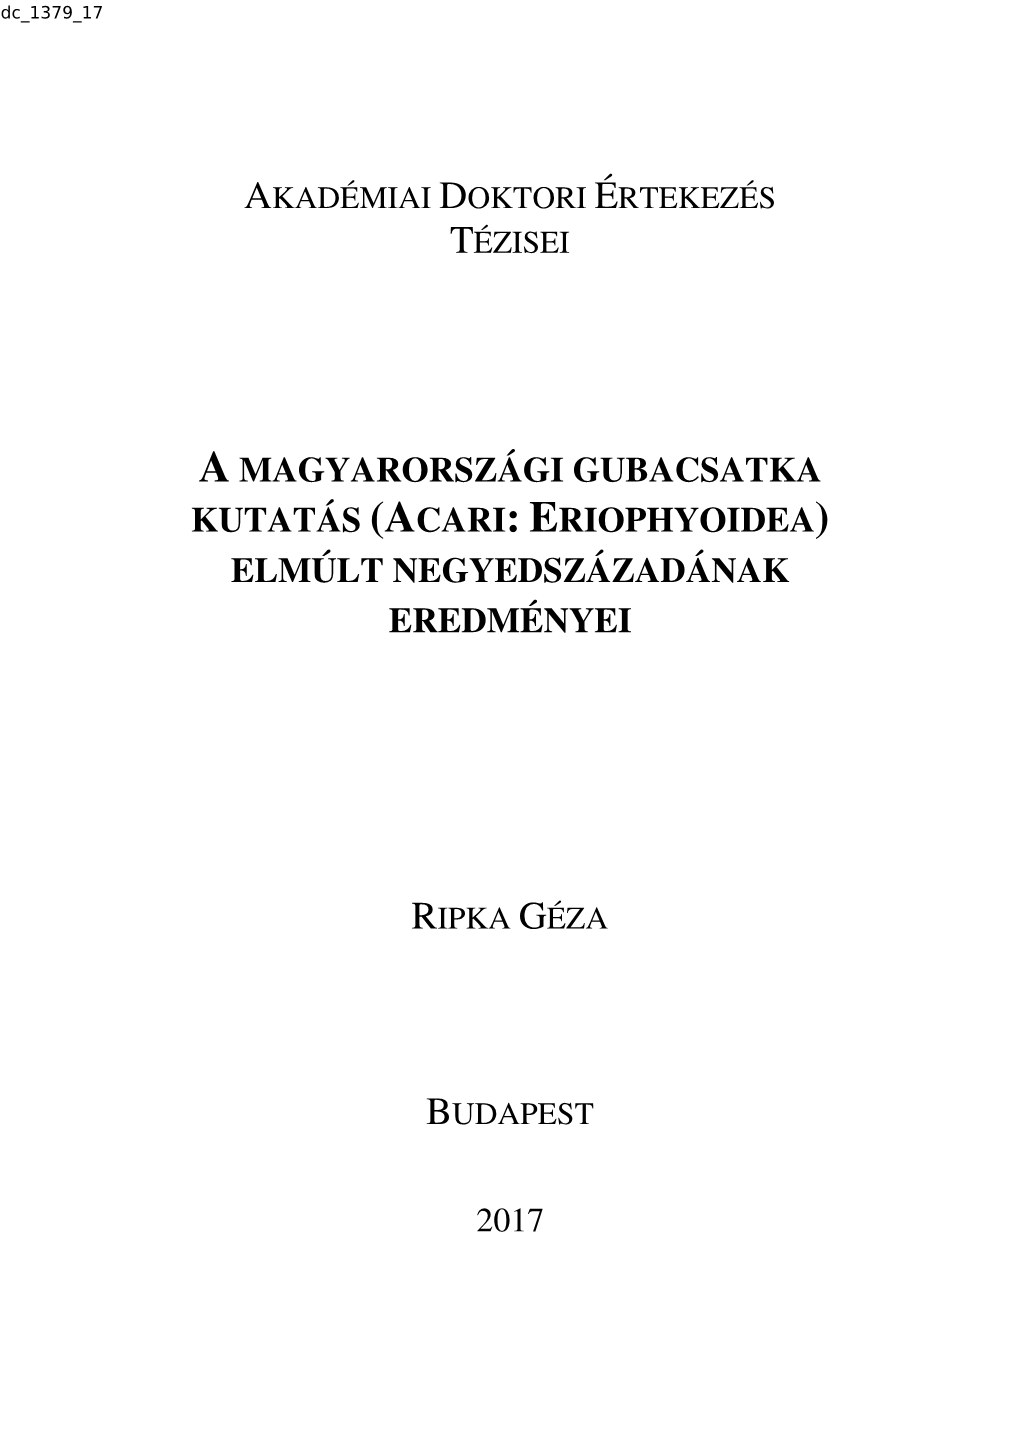 A Magyarországi Gubacsatka Kutatás (Acari: Eriophyoidea)